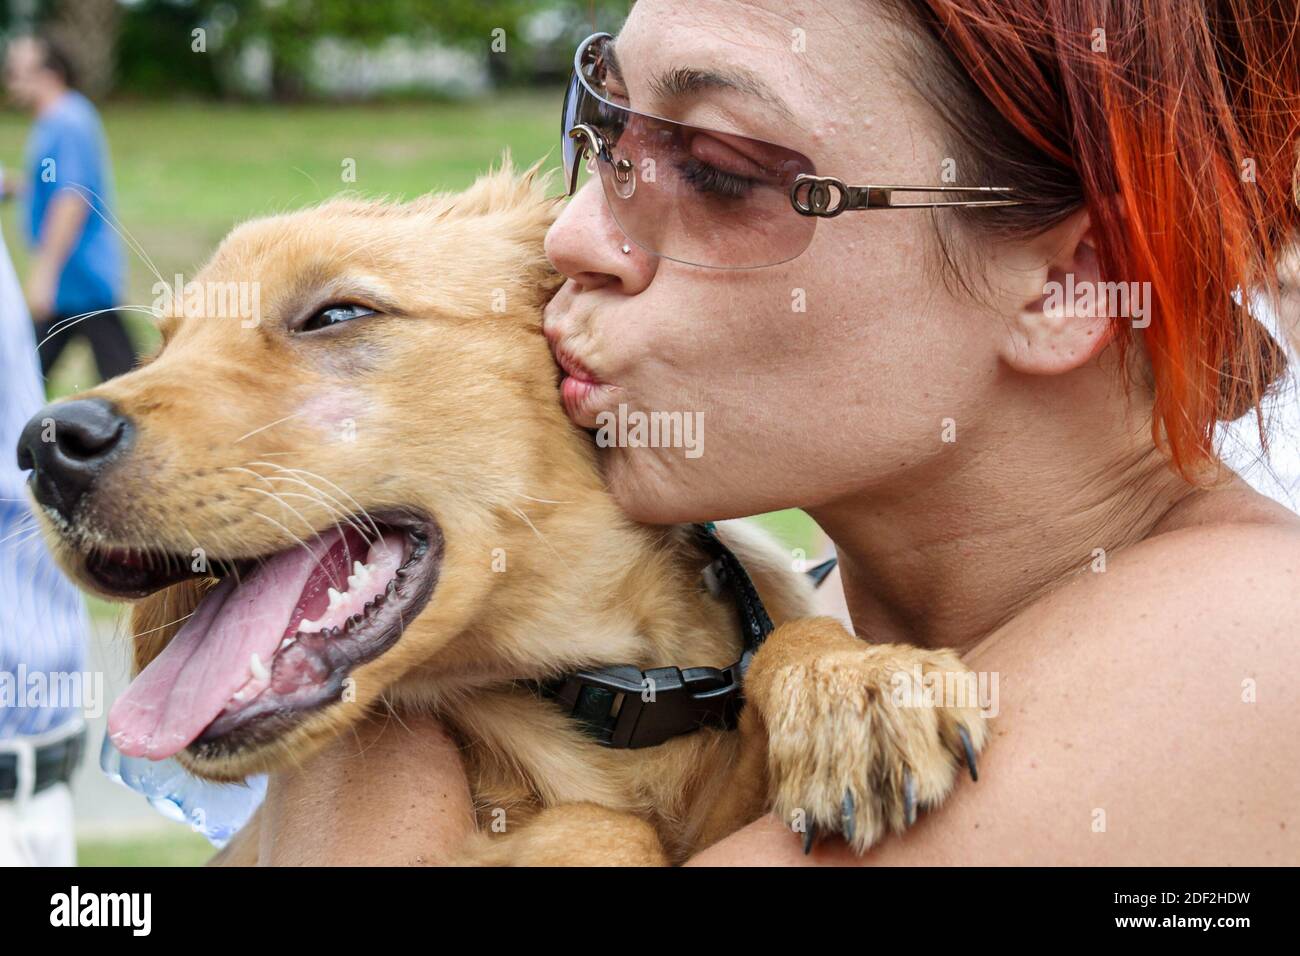 Miami Florida, Coconut Grove Pfau Park, hispanische Frau Hündin Haustier halten küssende Begleiter, Stockfoto